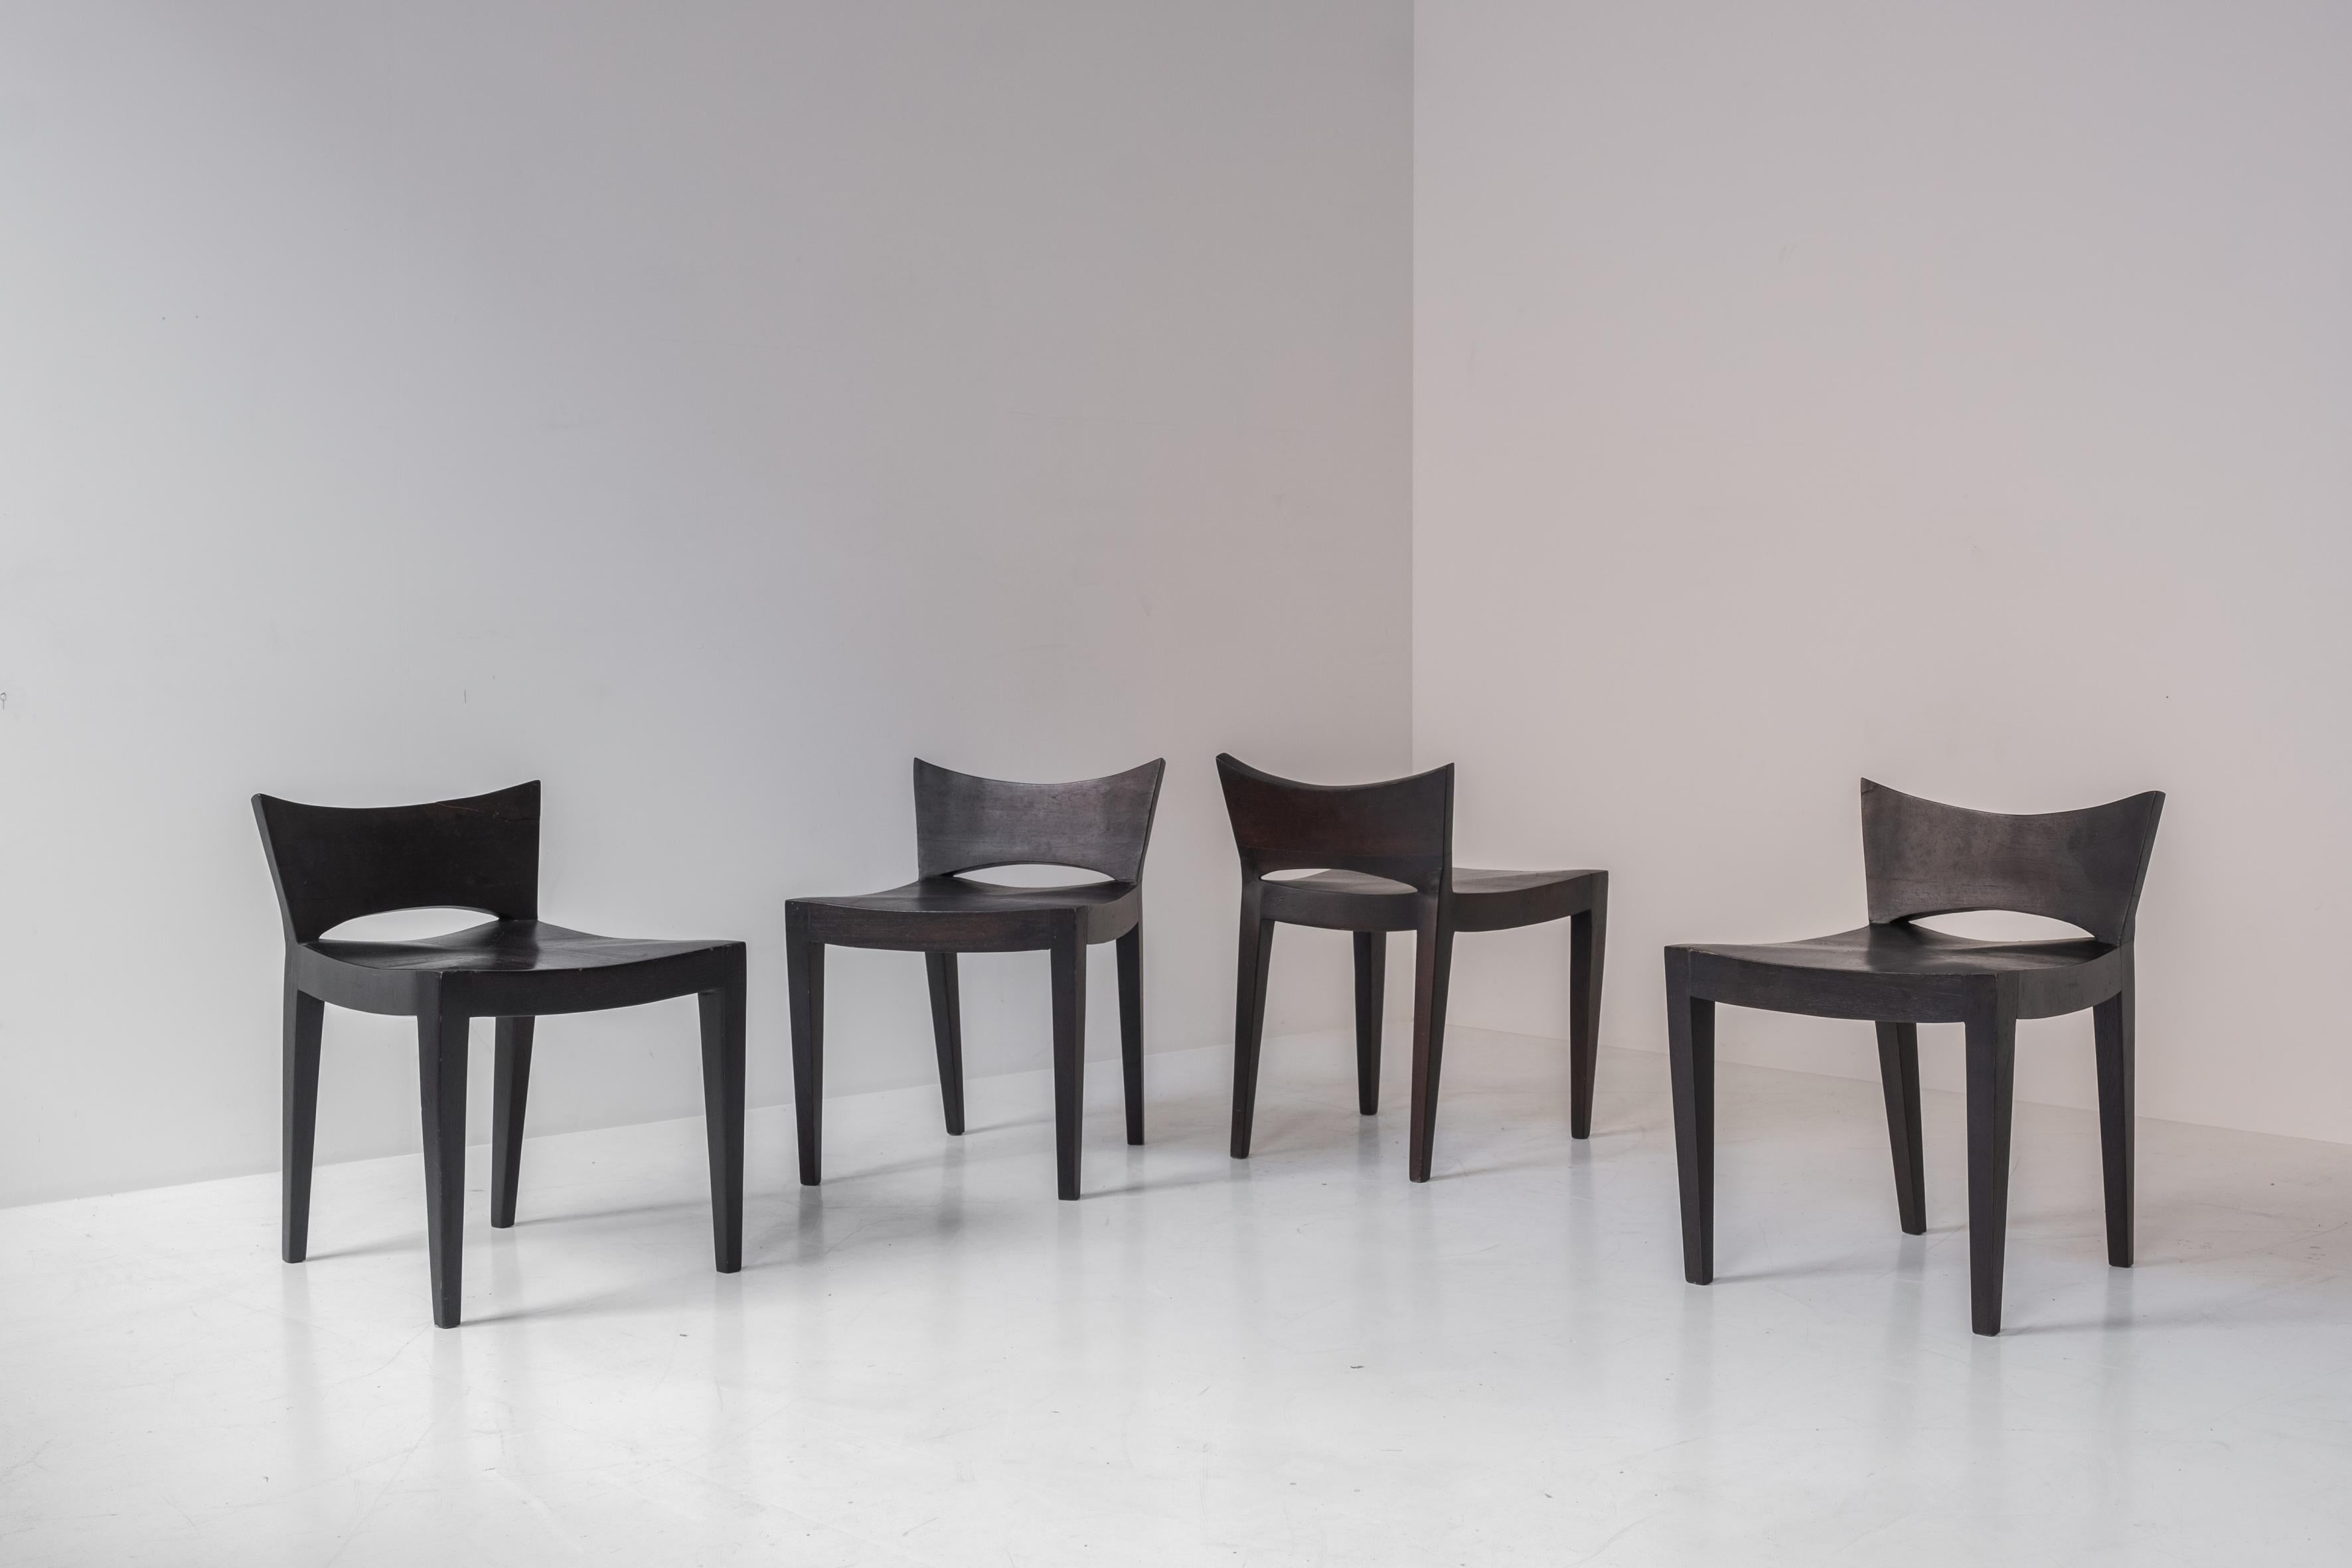 Exceptionnel ensemble de quatre chaises de salle à manger modernistes en chêne teinté provenant de France, datant des années 1960. Ces chaises ont un dossier bas inhabituel qui confère à ces pièces une esthétique saisissante. Présenté dans un bon